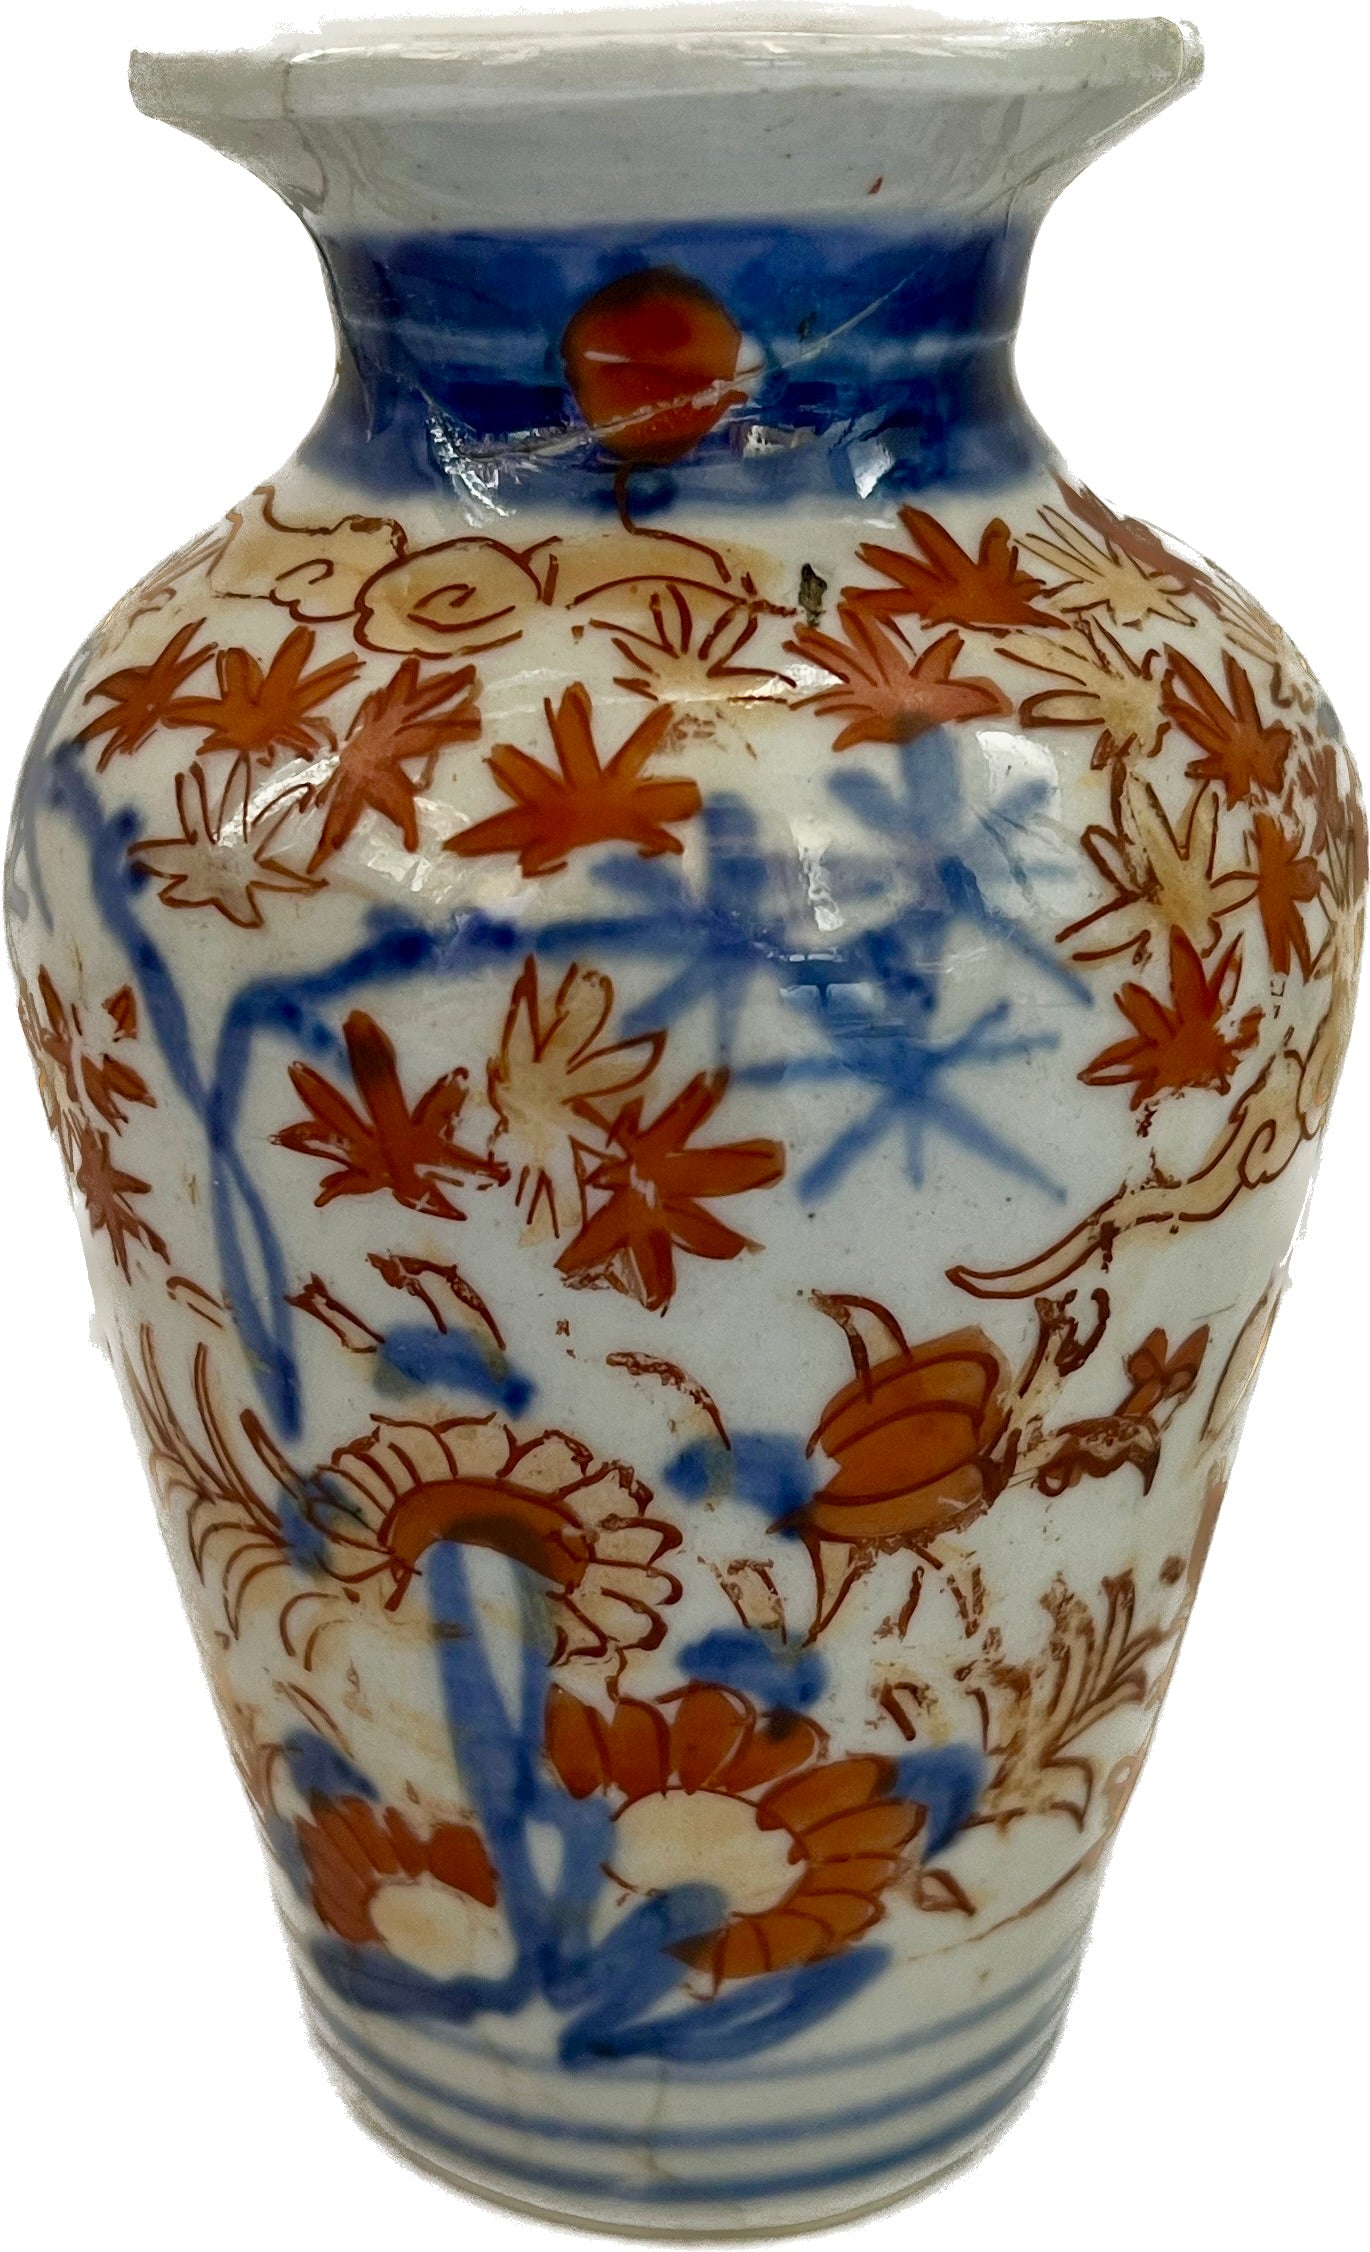 一对约十九世纪明治时期的伊万里小花瓶